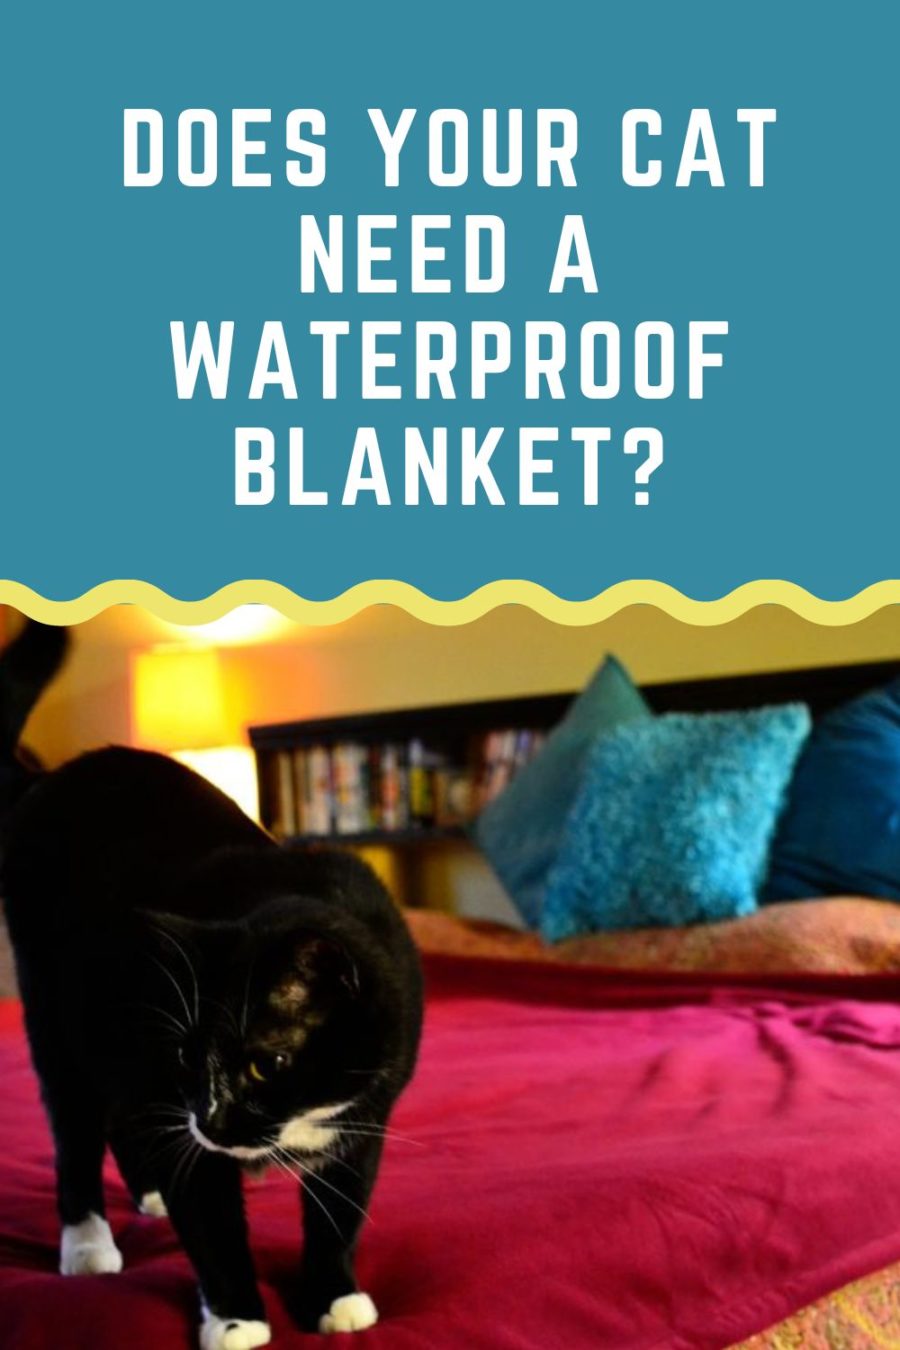 Waterproof blanket for bed